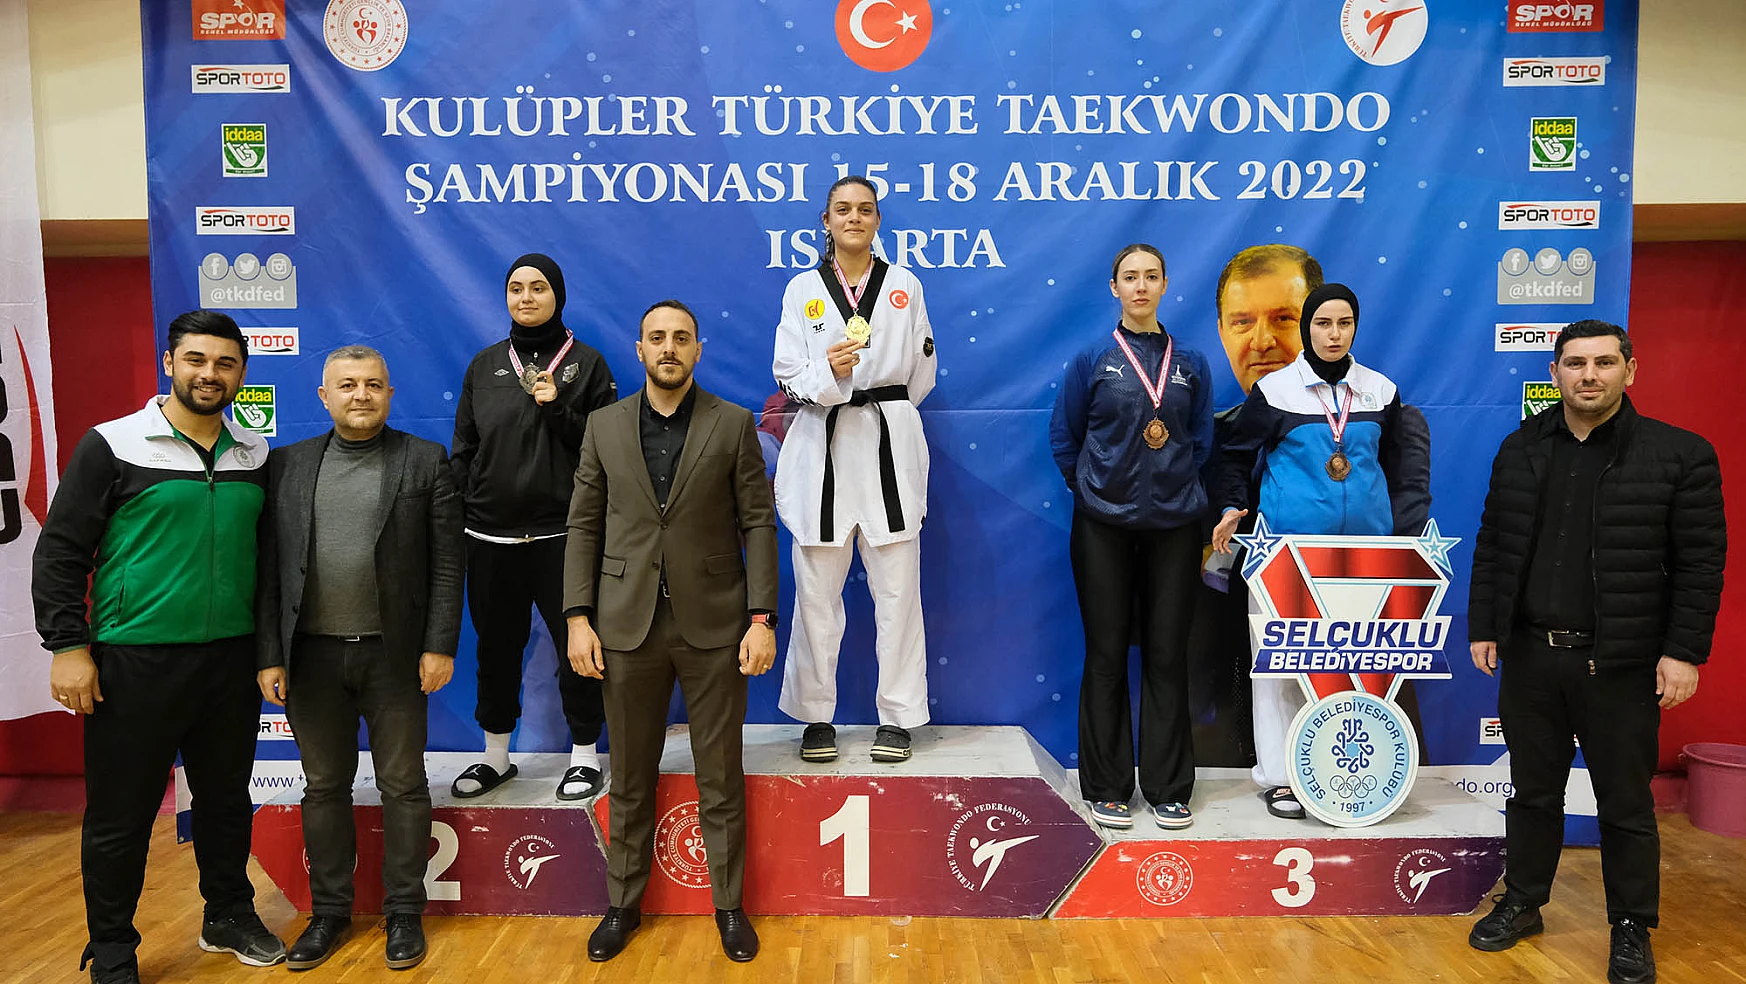 Selçuklu Belediyespor Kulübü Taekwondo Takımından İki Madalya